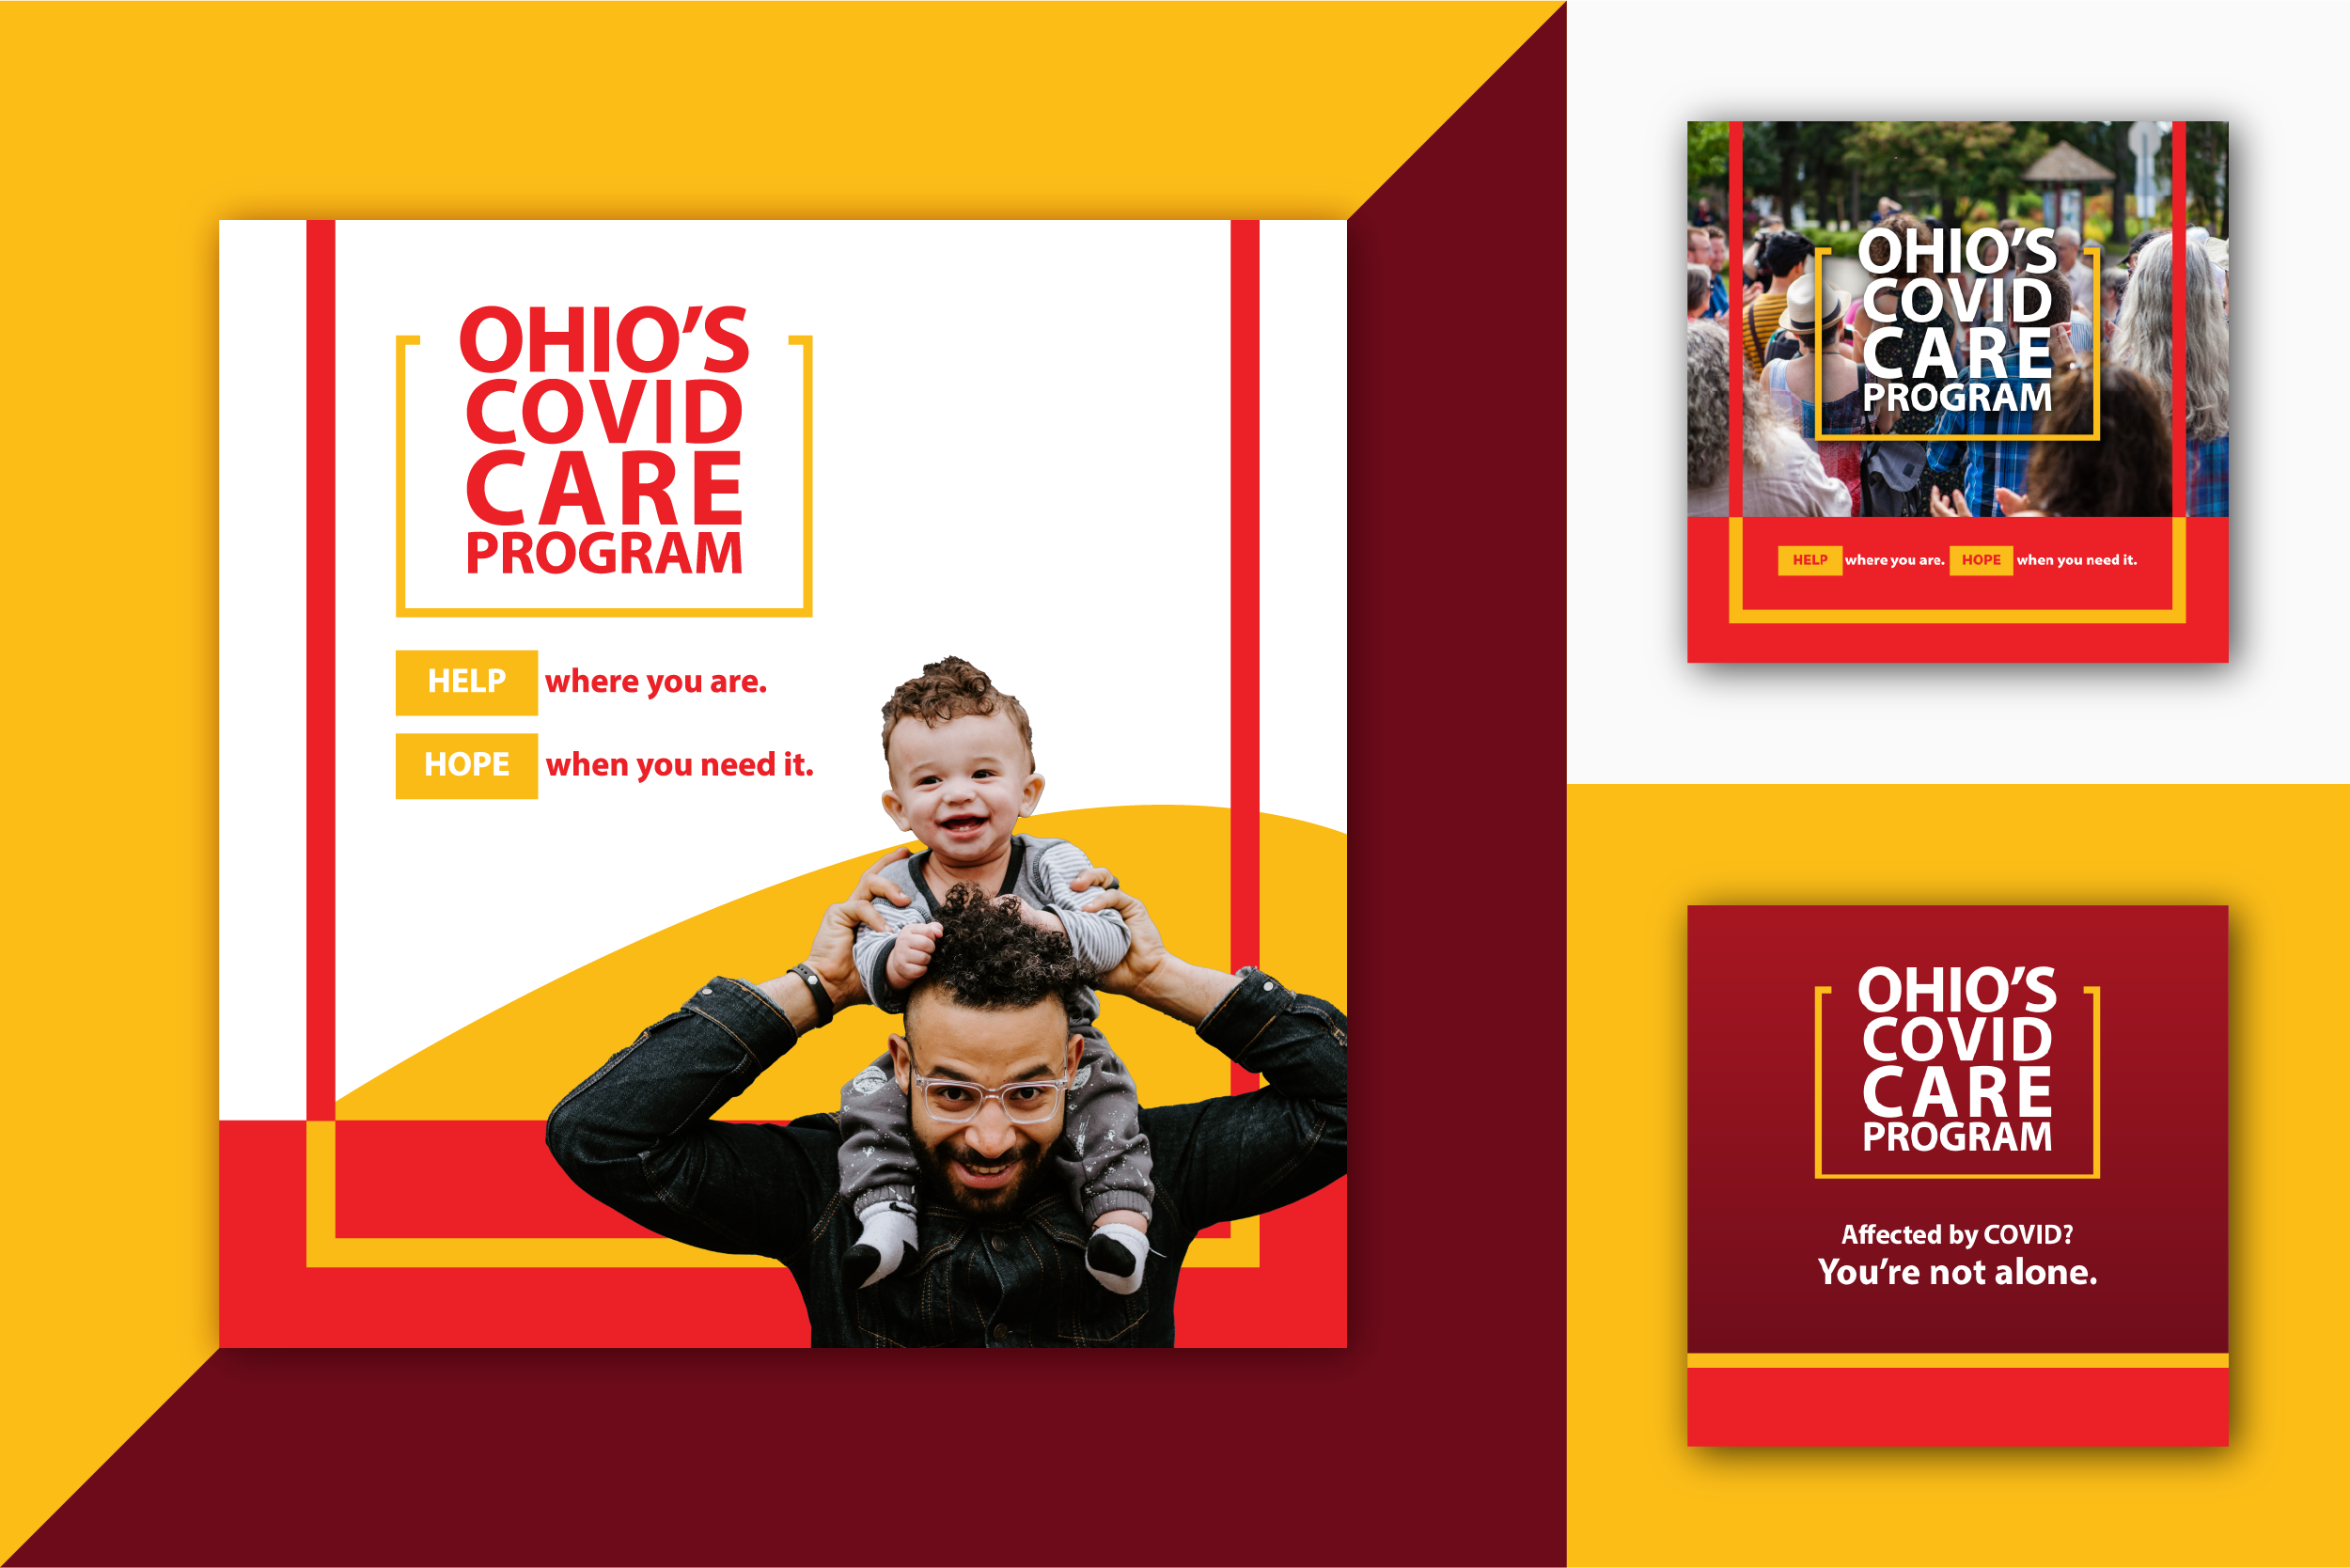 Ohio’s Covid Care Program